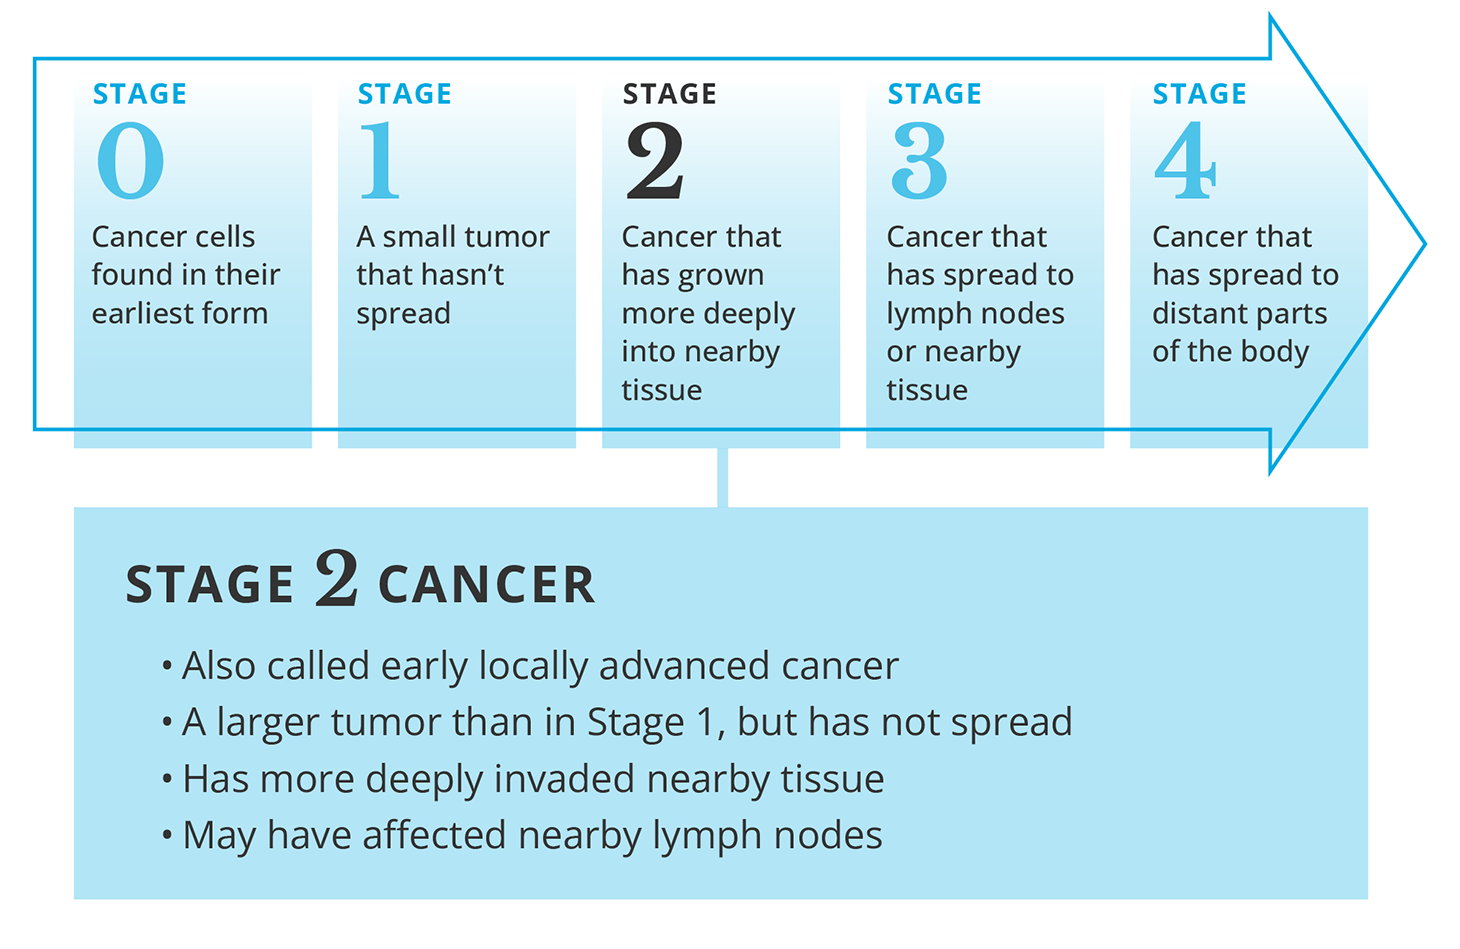 Description of stage 2 cancer